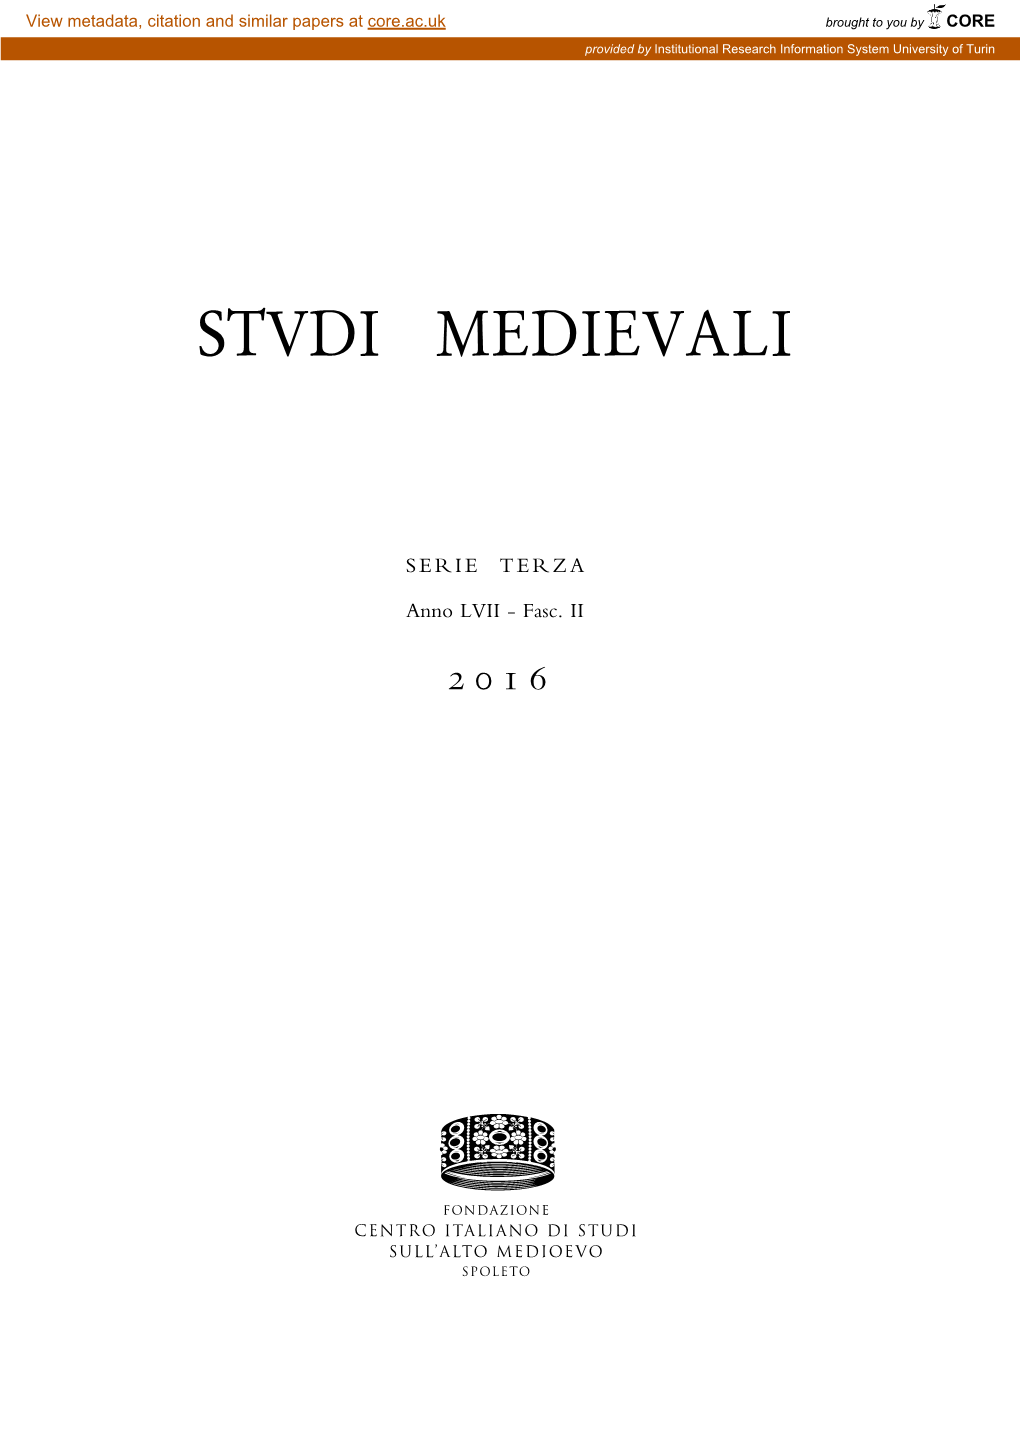 Stvdi Medievali